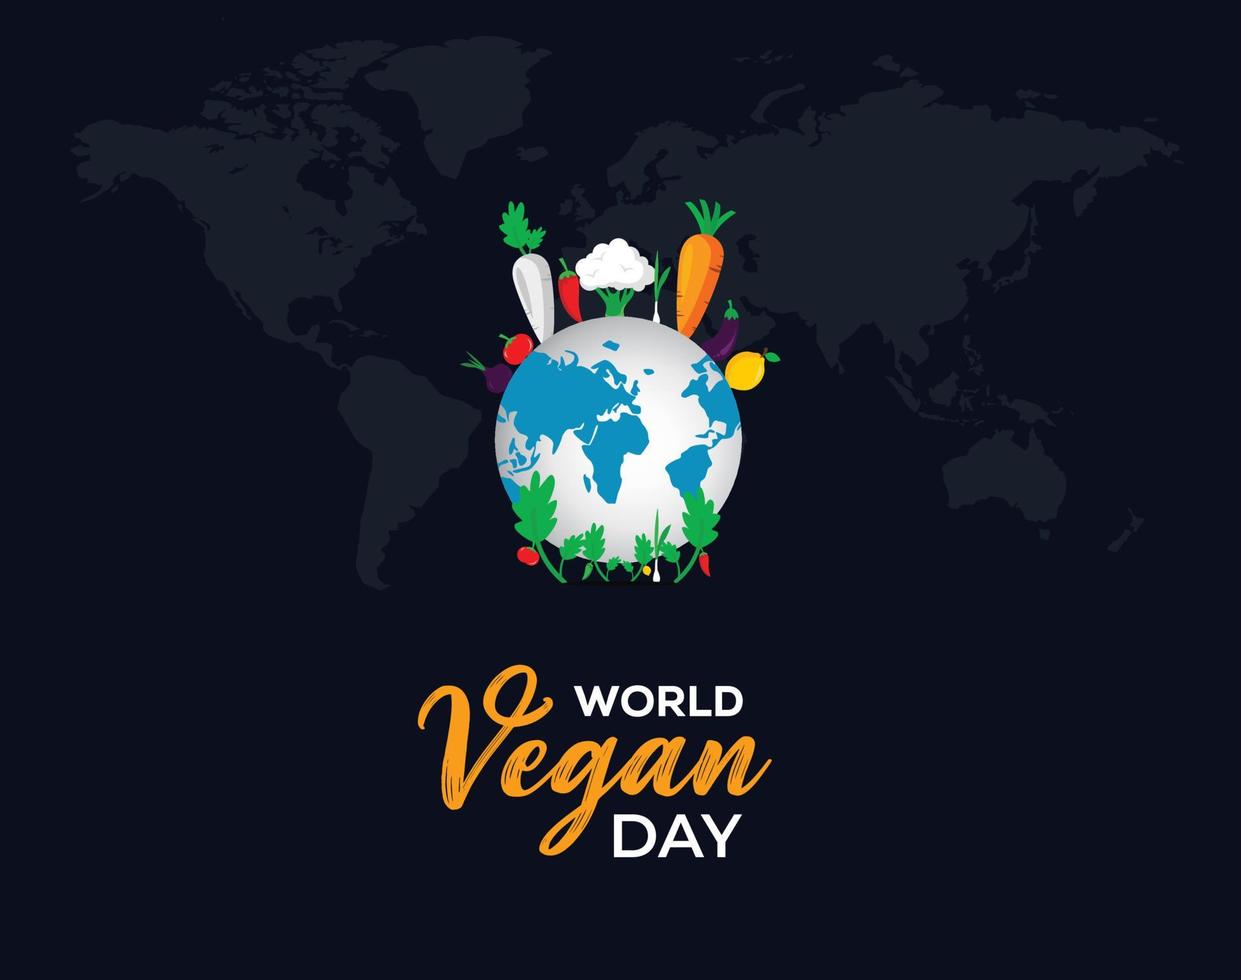 concept de la journée mondiale des végétaliens. 1er novembre. Journée mondiale des végétariens pour la publication sur les réseaux sociaux, la carte postale, la bannière, la carte de voeux. illustration vectorielle. vecteur